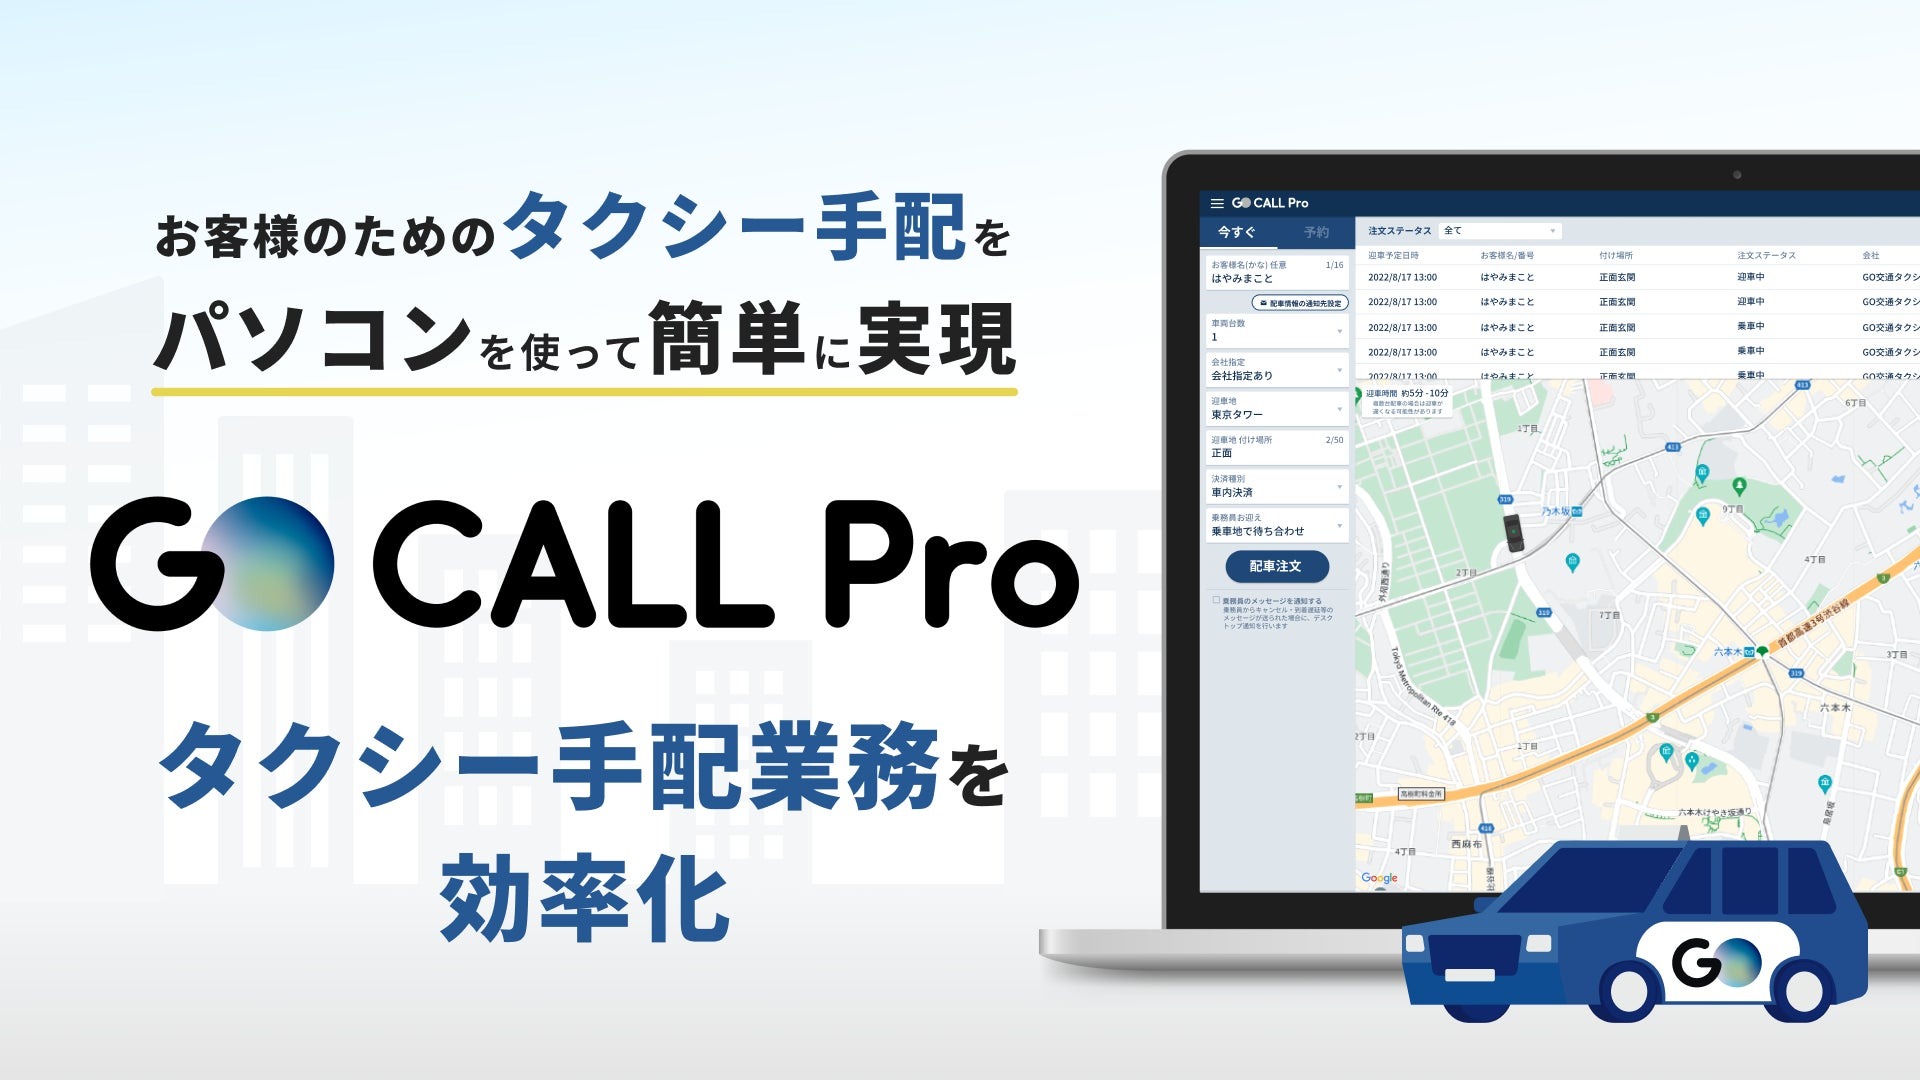 タクシーアプリ「GO」、代理手配専用サービス「GO CALL Pro」提供開始　電話対応だったタクシー手配業務をDXで効率化